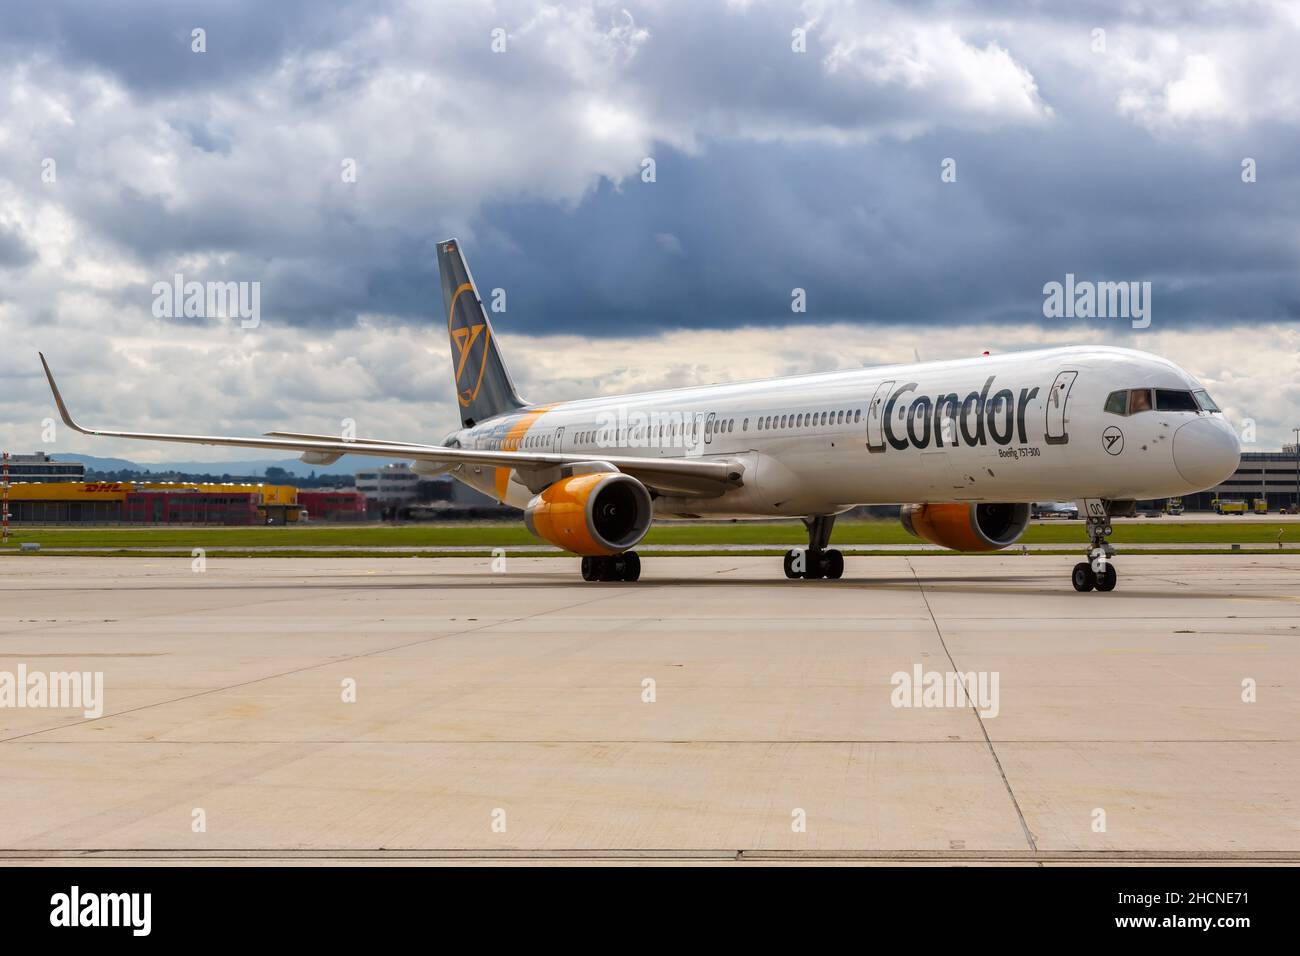 Stuttgart, Germany - September 11, 2021: Condor Boeing 757-300 airplane at Stuttgart airport (STR) in Germany. Stock Photo